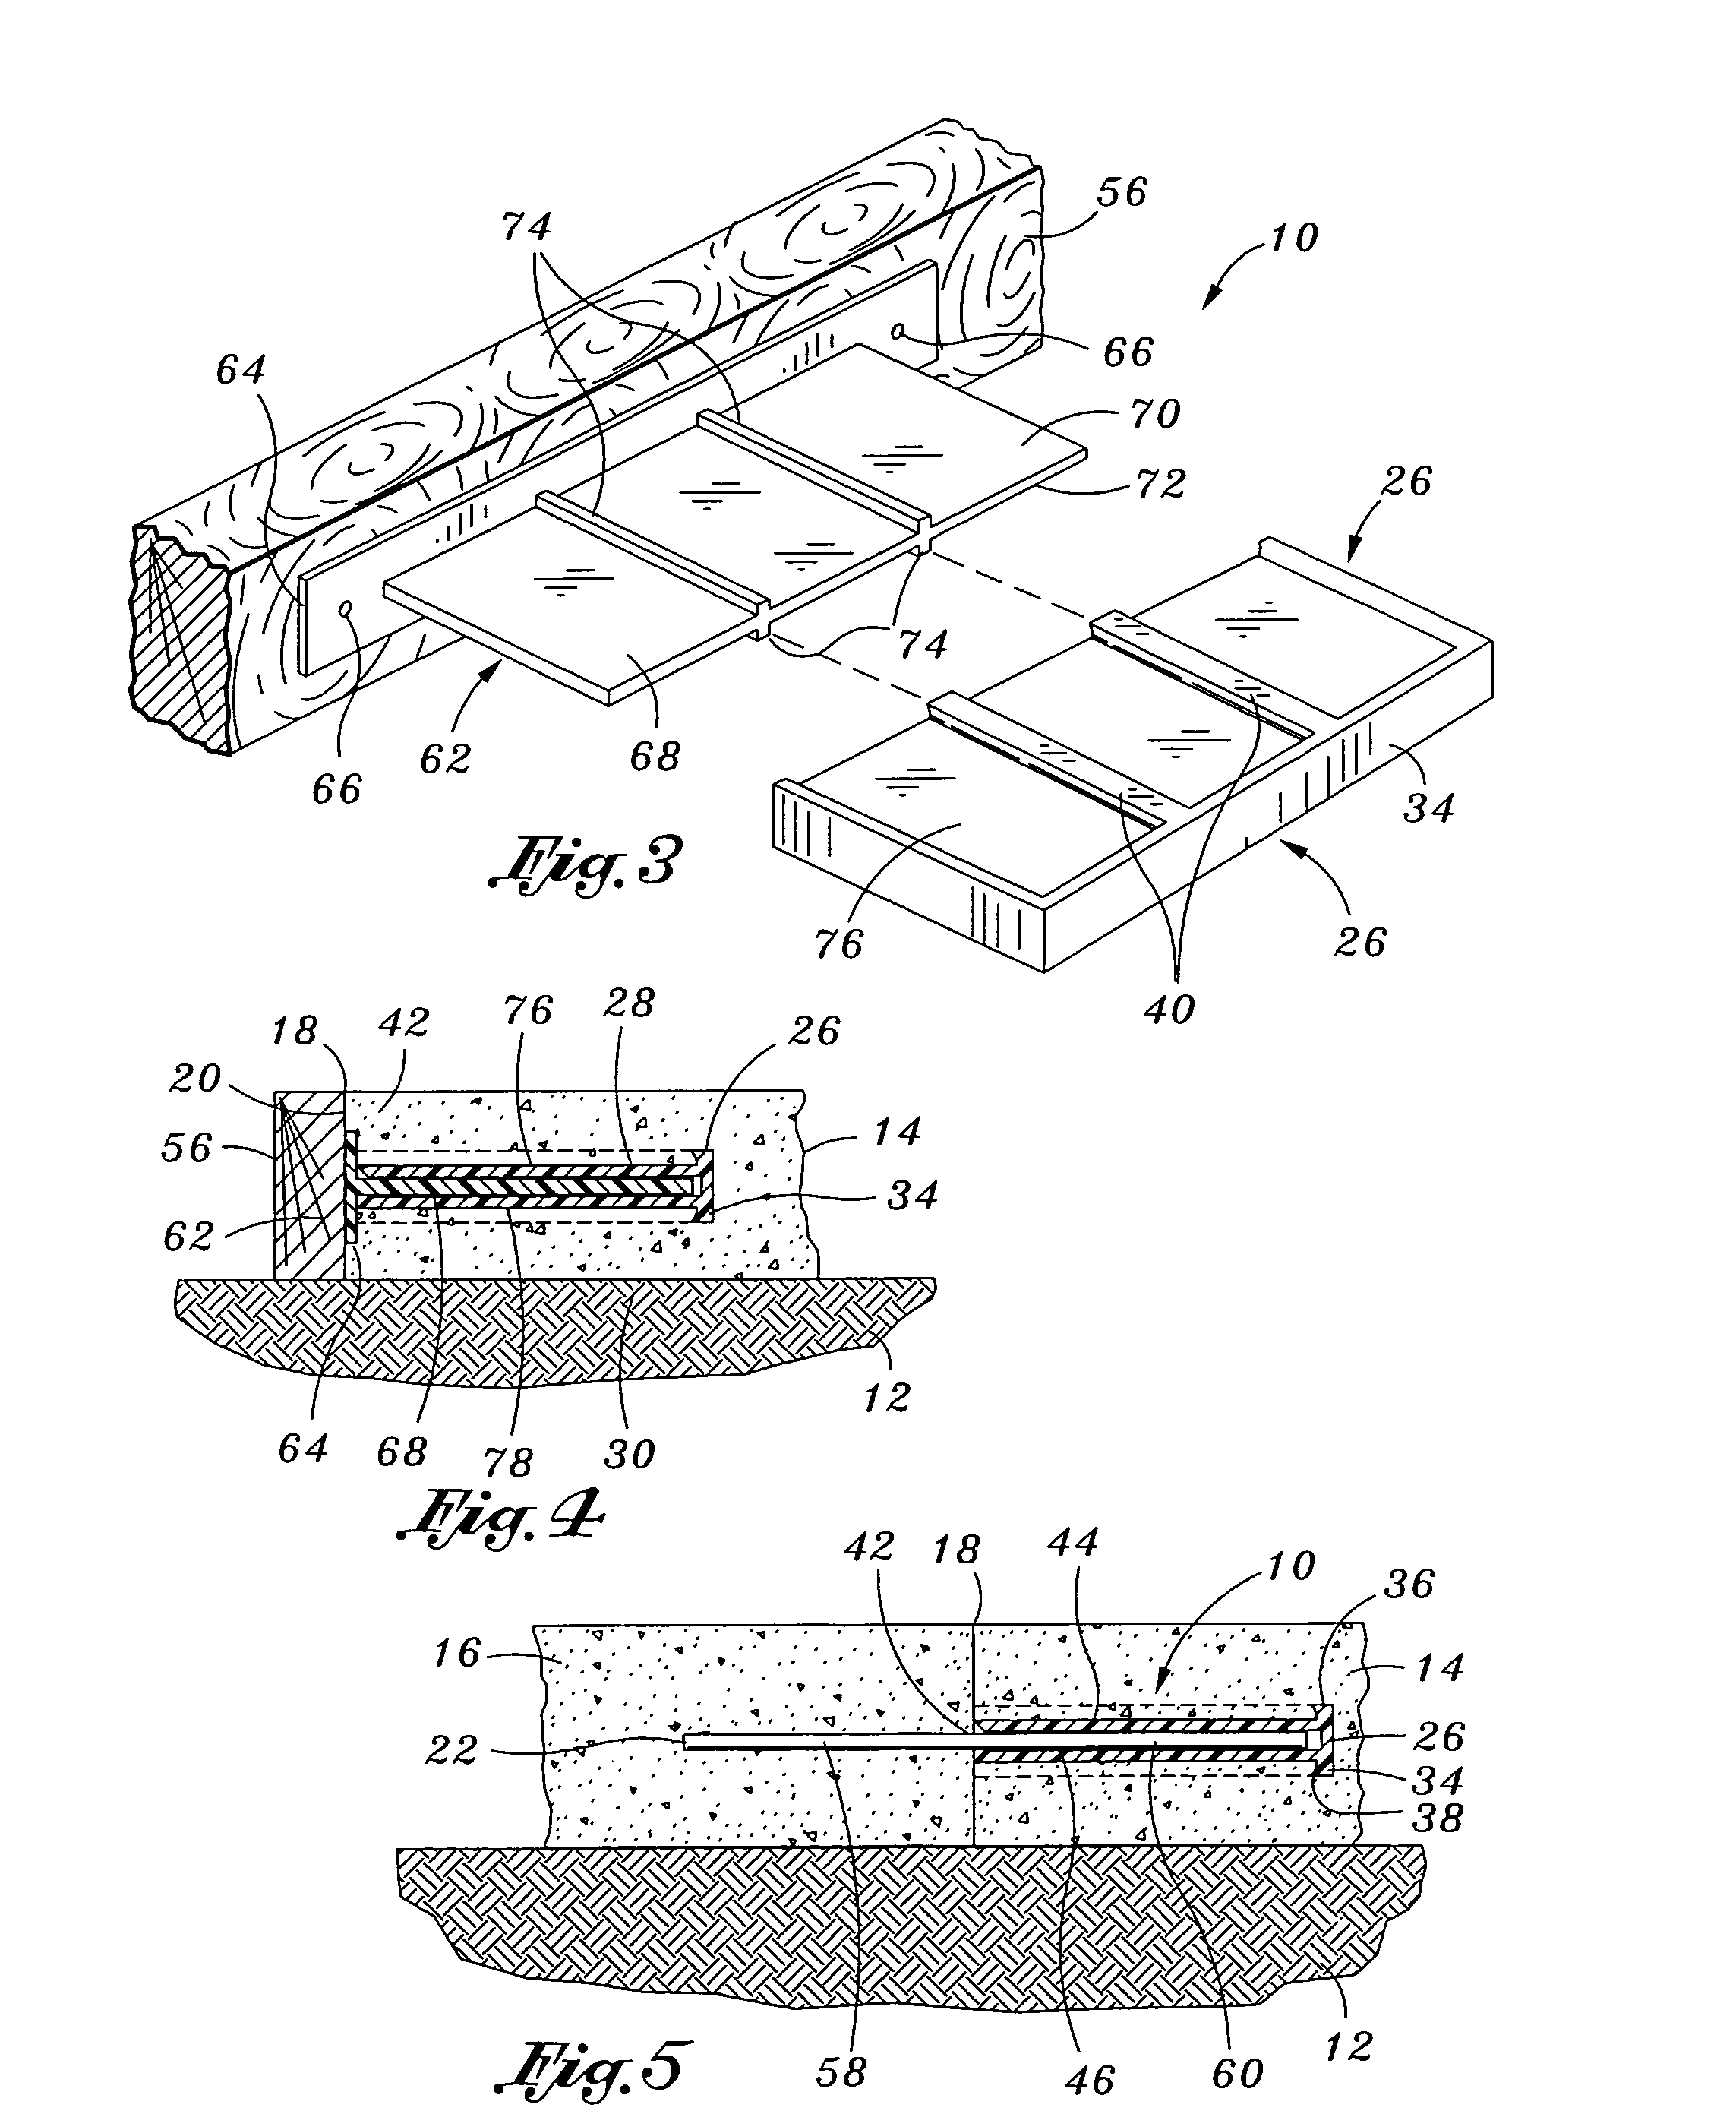 Plate concrete dowel system